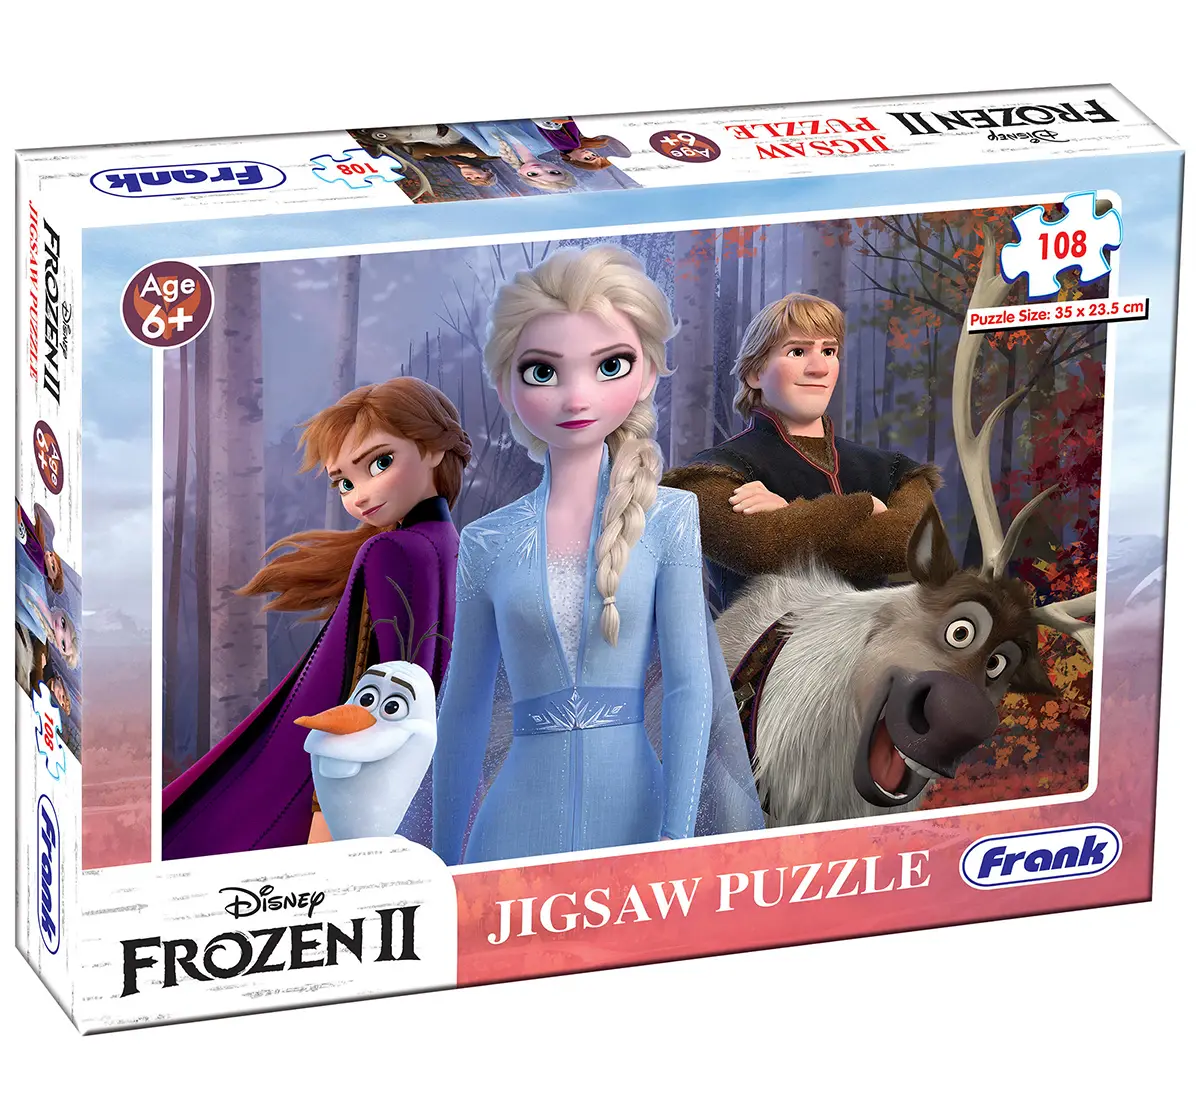 Frank Frozen II 108 Pcs Puzzle for Kids age 6Y+ 